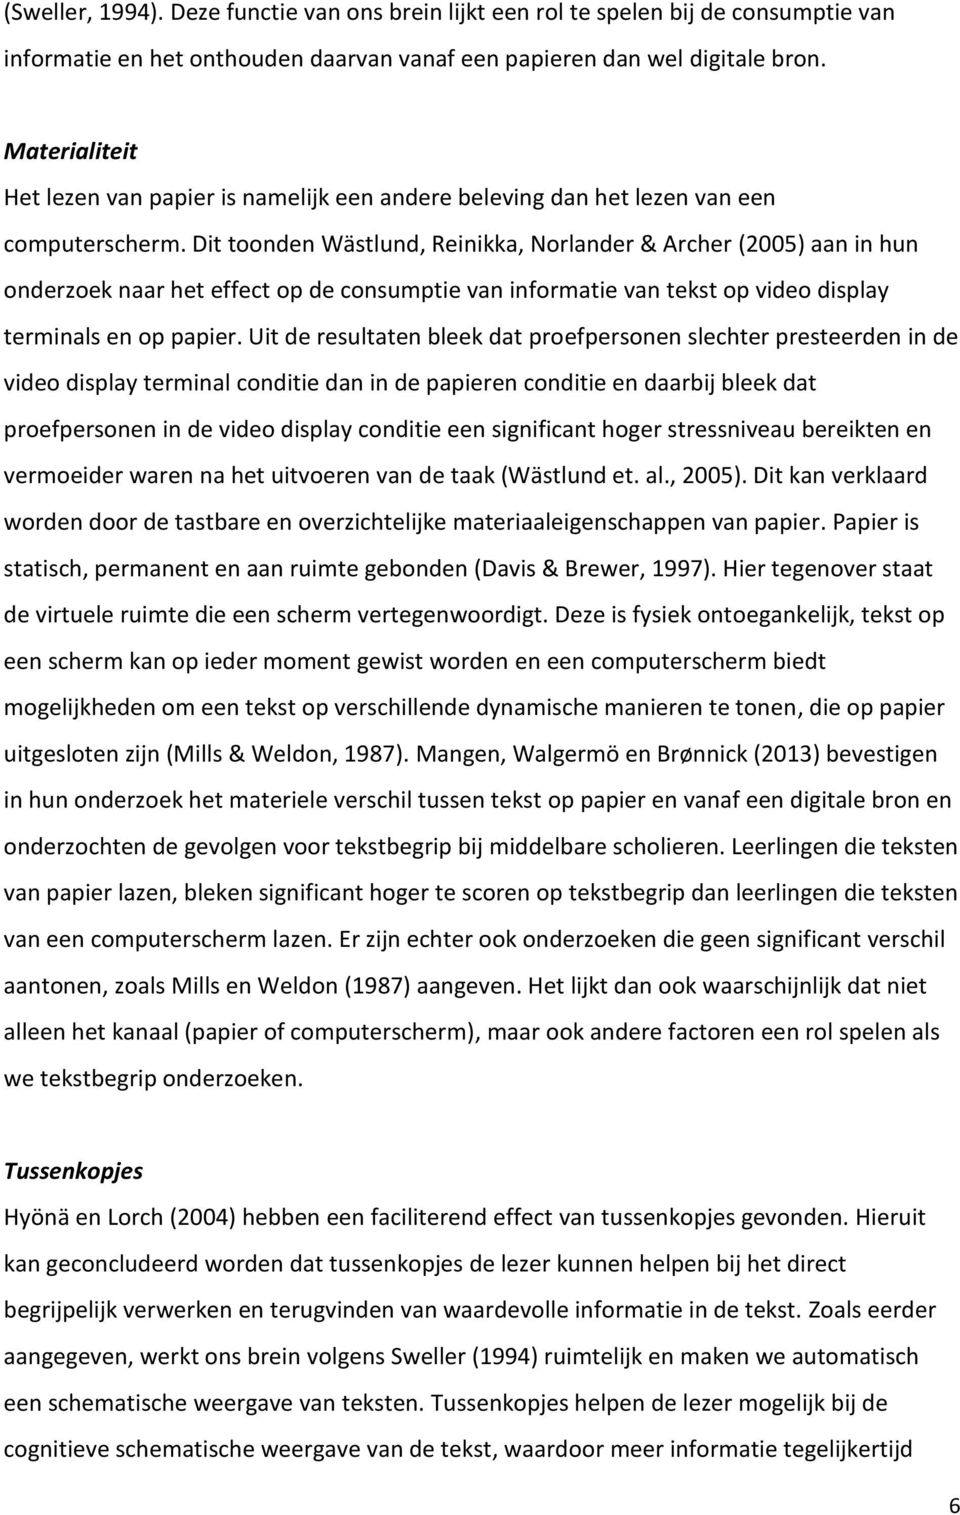 Dit toonden Wästlund, Reinikka, Norlander & Archer (2005) aan in hun onderzoek naar het effect op de consumptie van informatie van tekst op video display terminals en op papier.